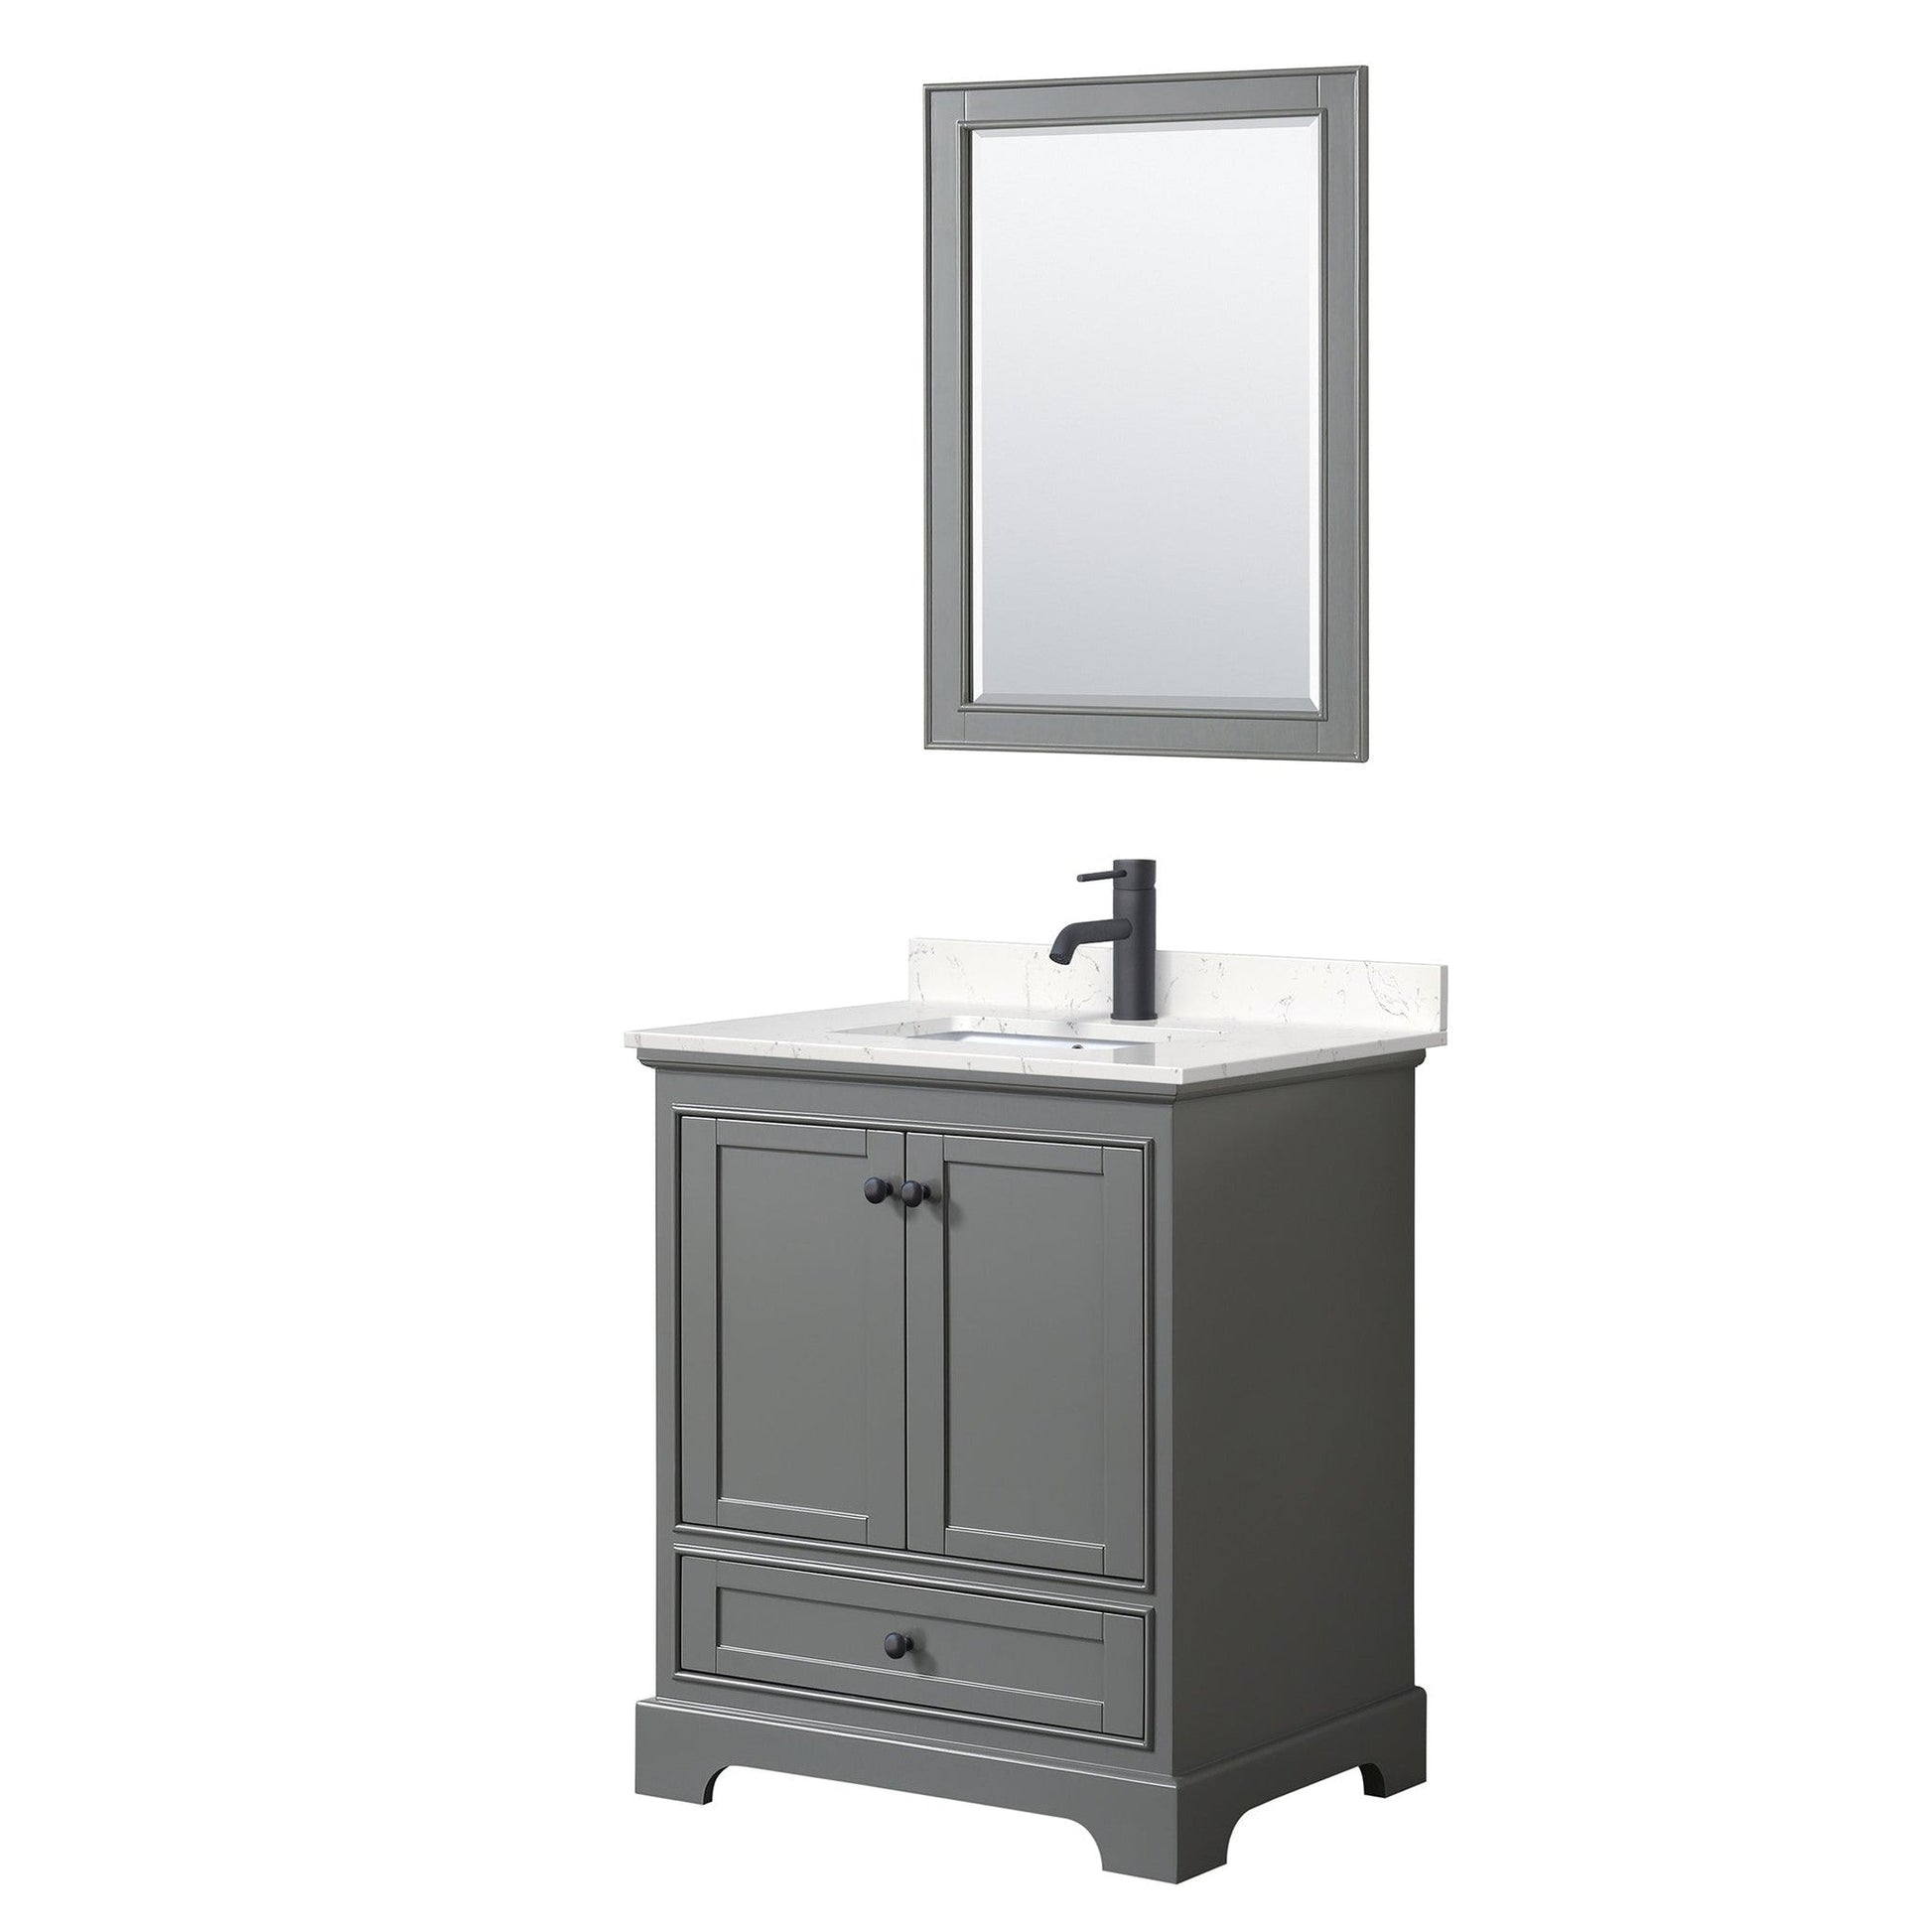 Deborah 30" Single Bathroom Vanity in Dark Gray, Carrara Cultured Marble Countertop, Undermount Square Sink, Matte Black Trim, 24" Mirror